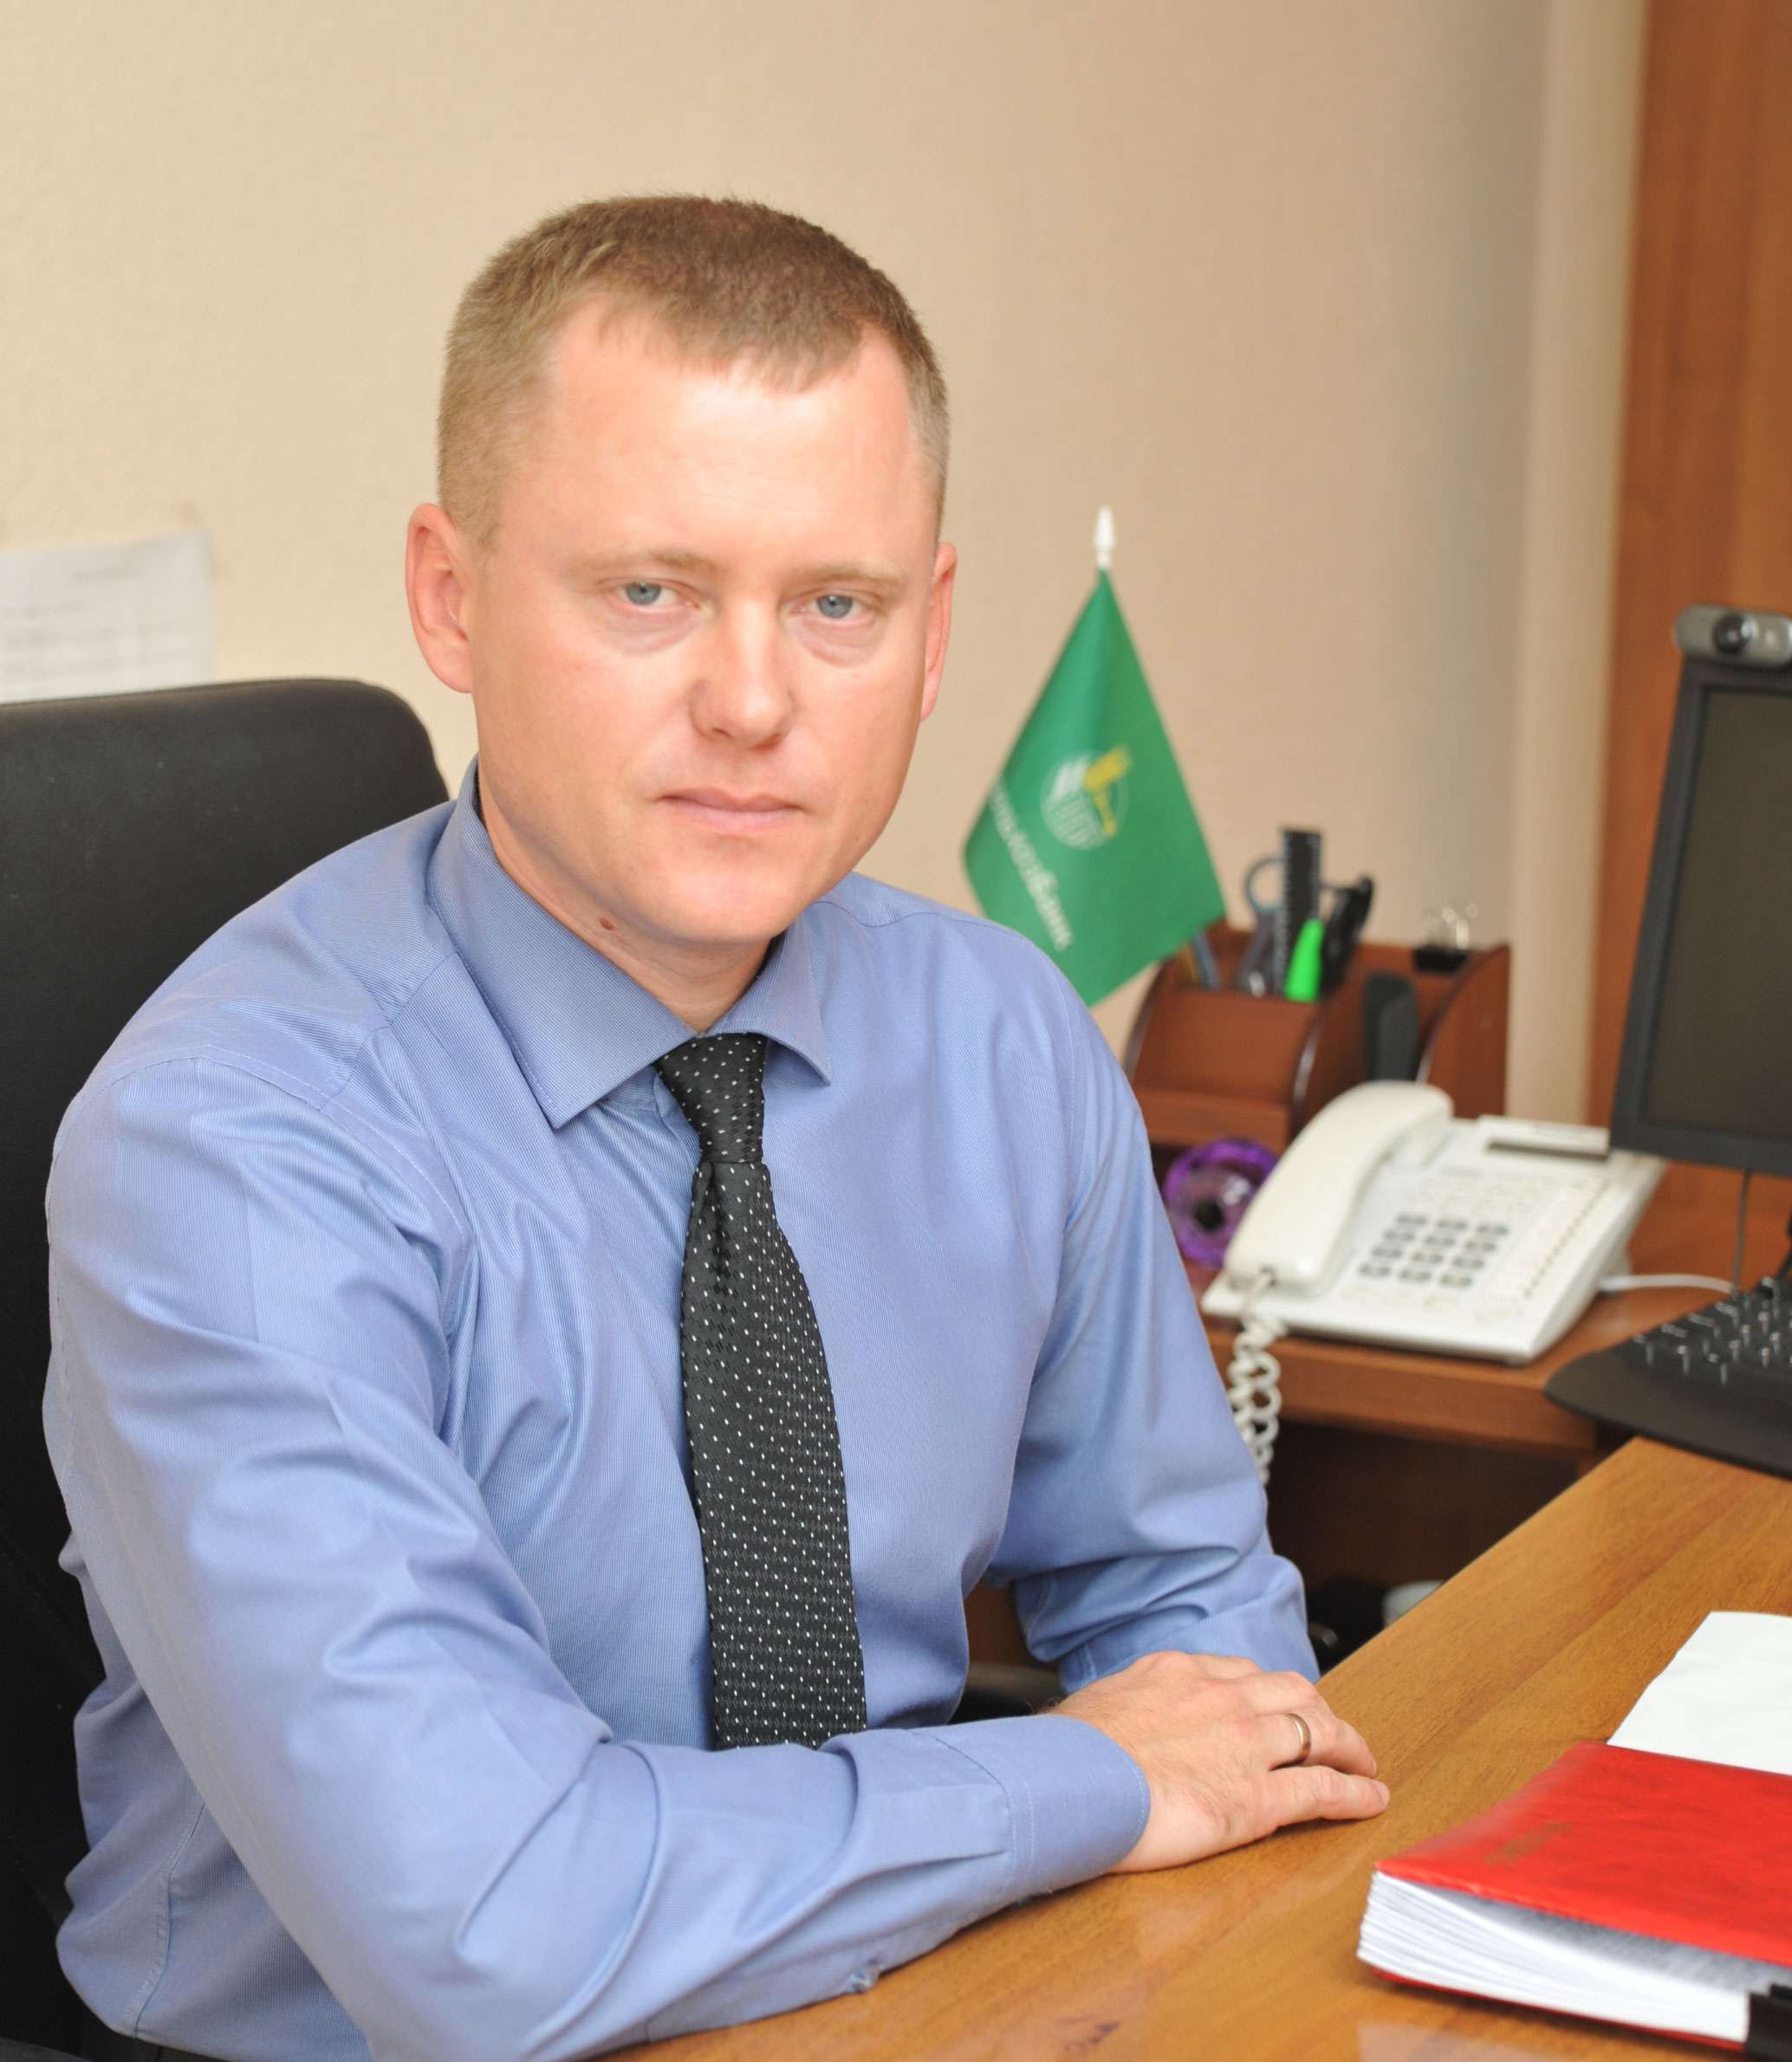 Сергей Николаевич Лукашов назначен руководителем дополнительного офиса в станице Павловской ОАО «Россельхозбанк».